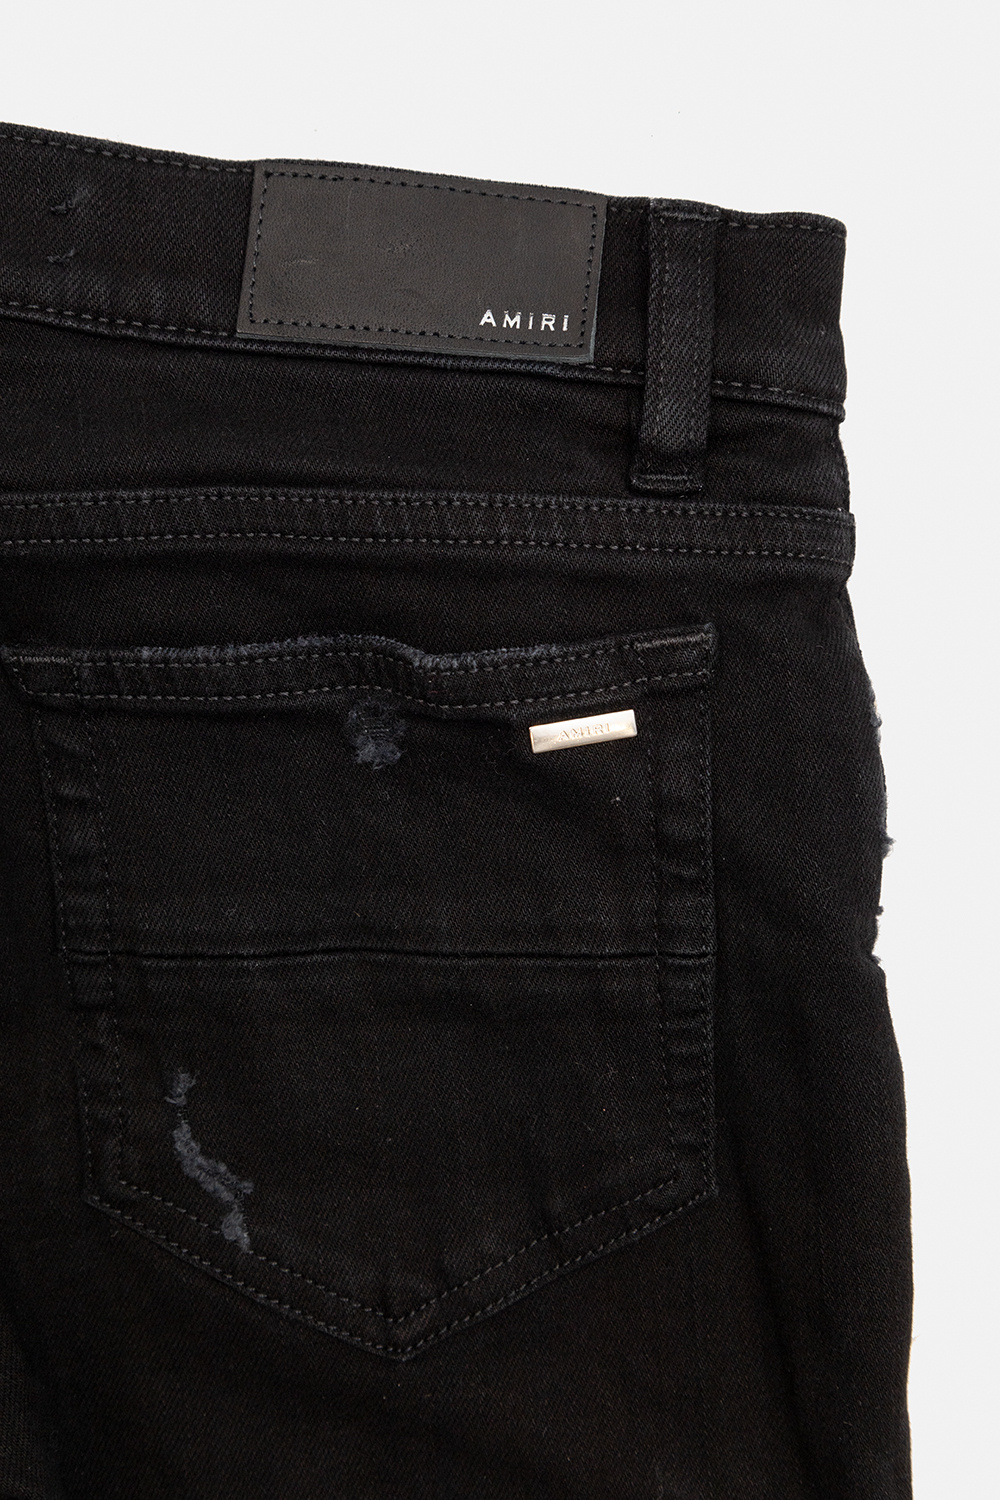 Amiri Kids Distressed jeans